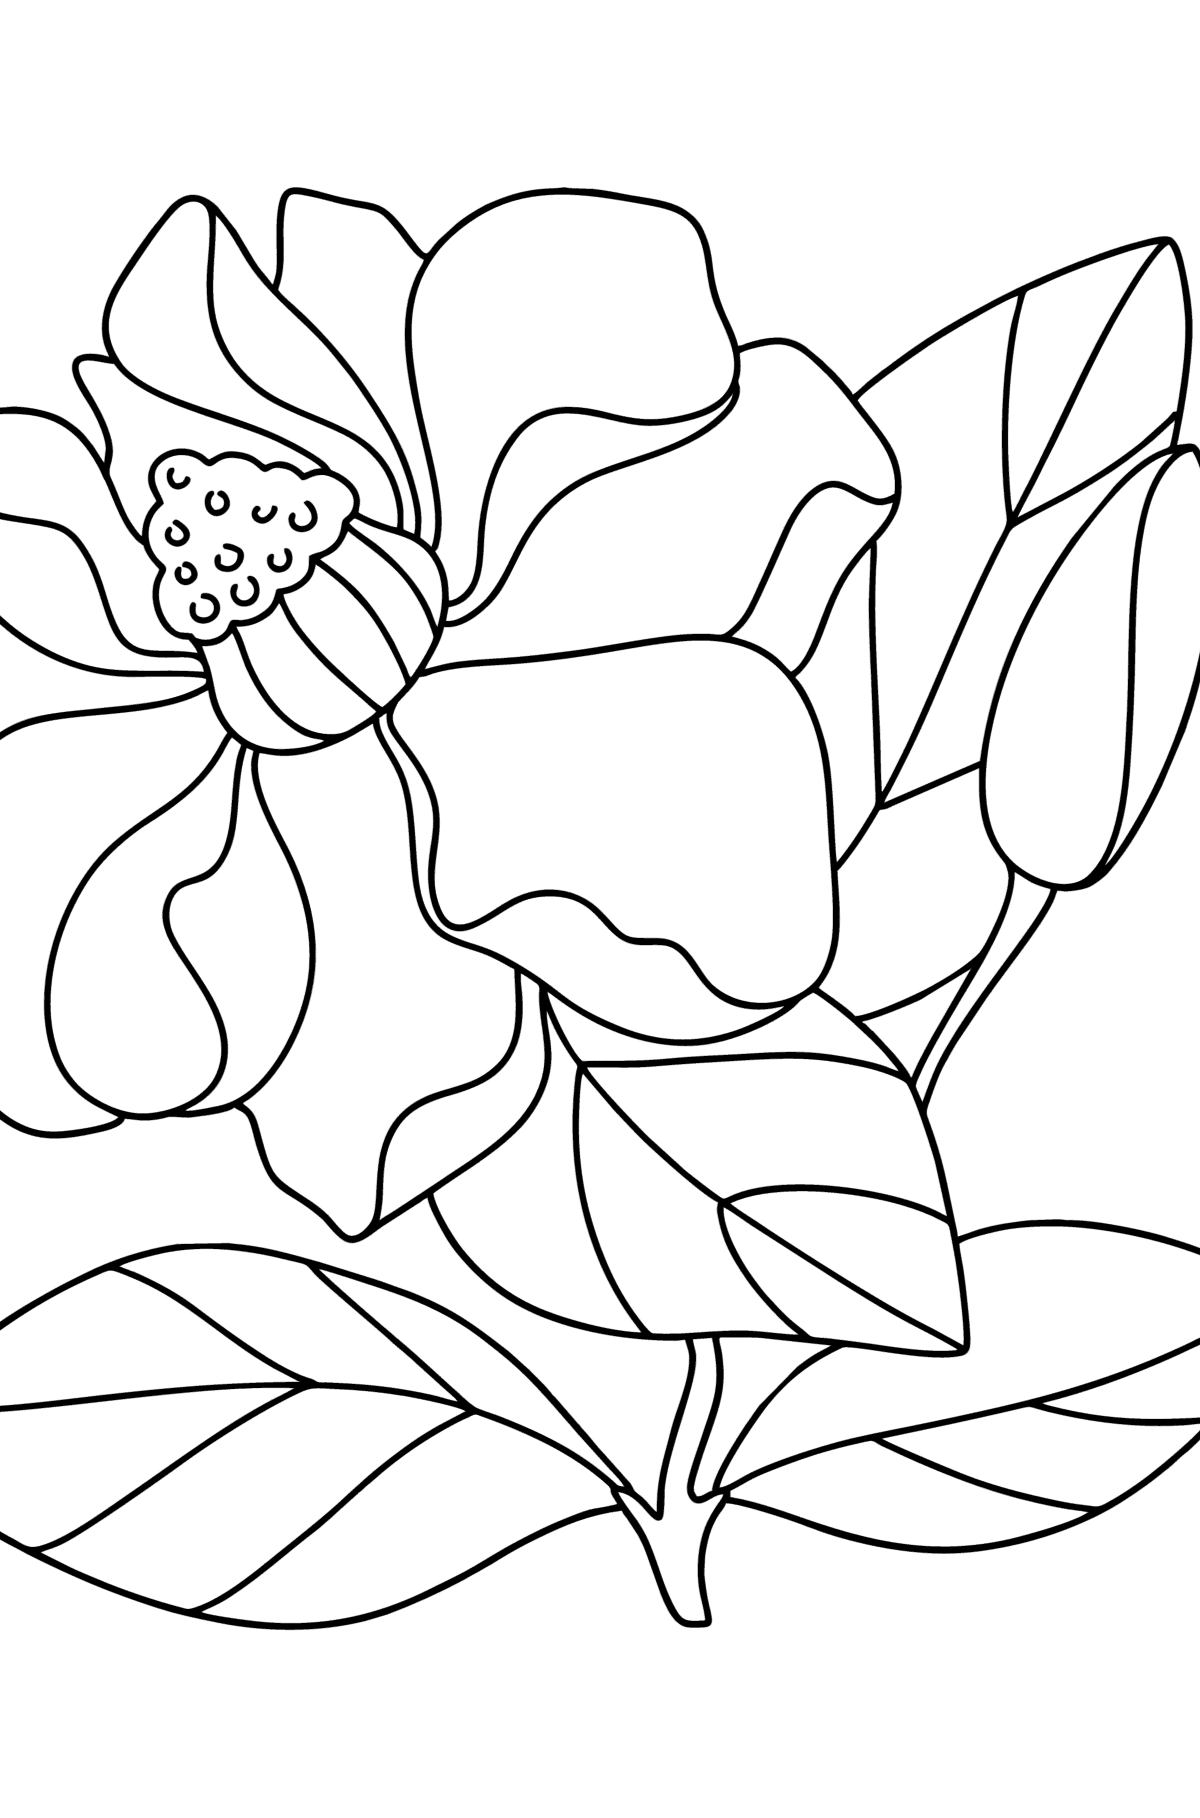 Dibujo de Magnolia para colorear - Dibujos para Colorear para Niños